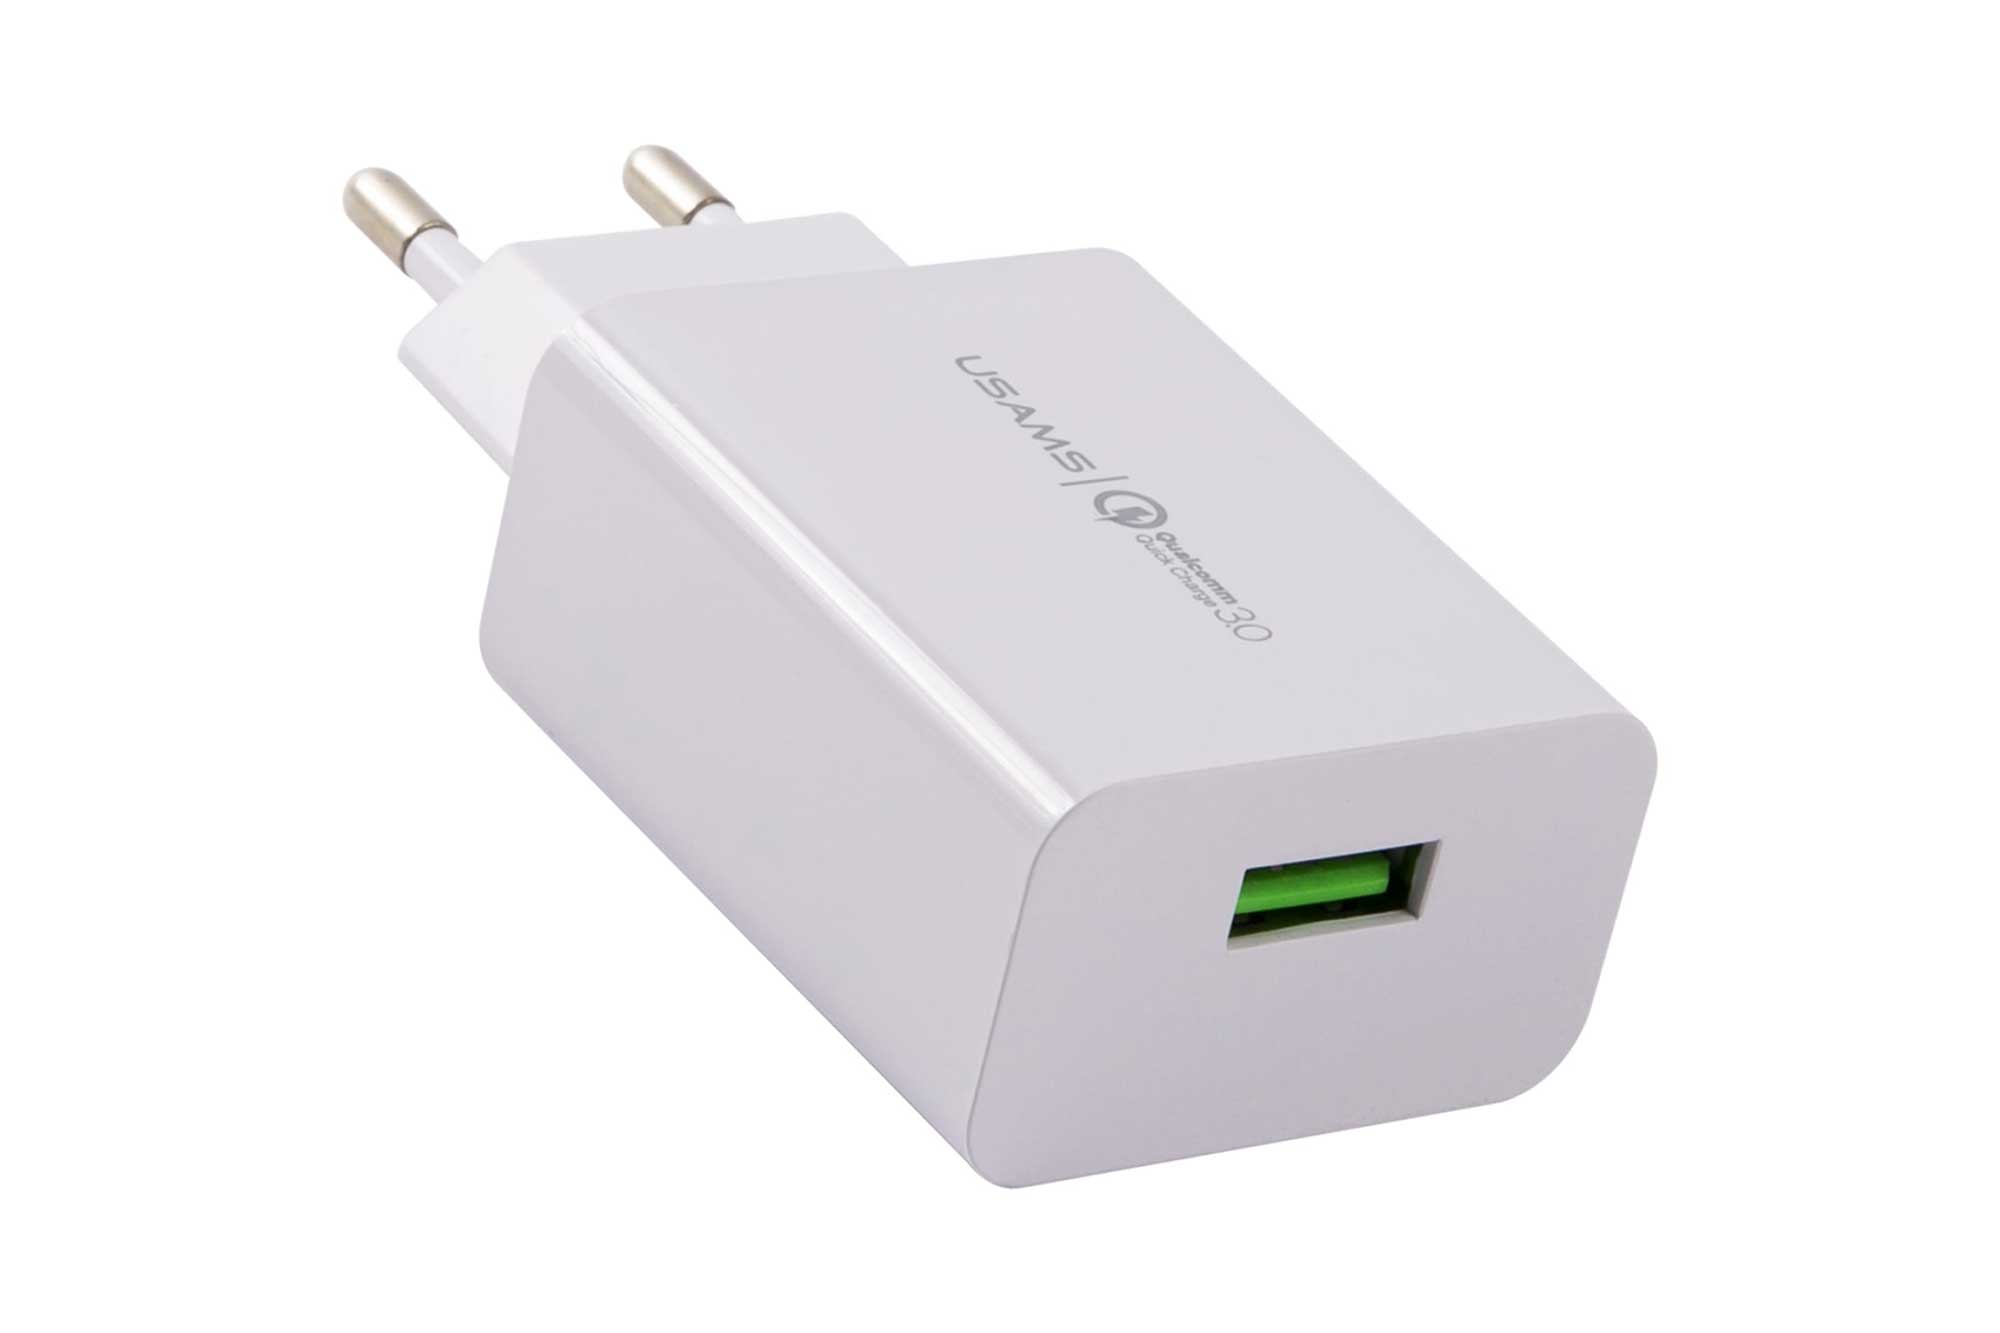 Сетевое зарядное устройство USAMS - (Модель - US-CC083) T22 1 USB QC3.0, 3A, 18W, белый (CC83TC01) устройство зарядное сетевое qilive 1 usb 3a белый